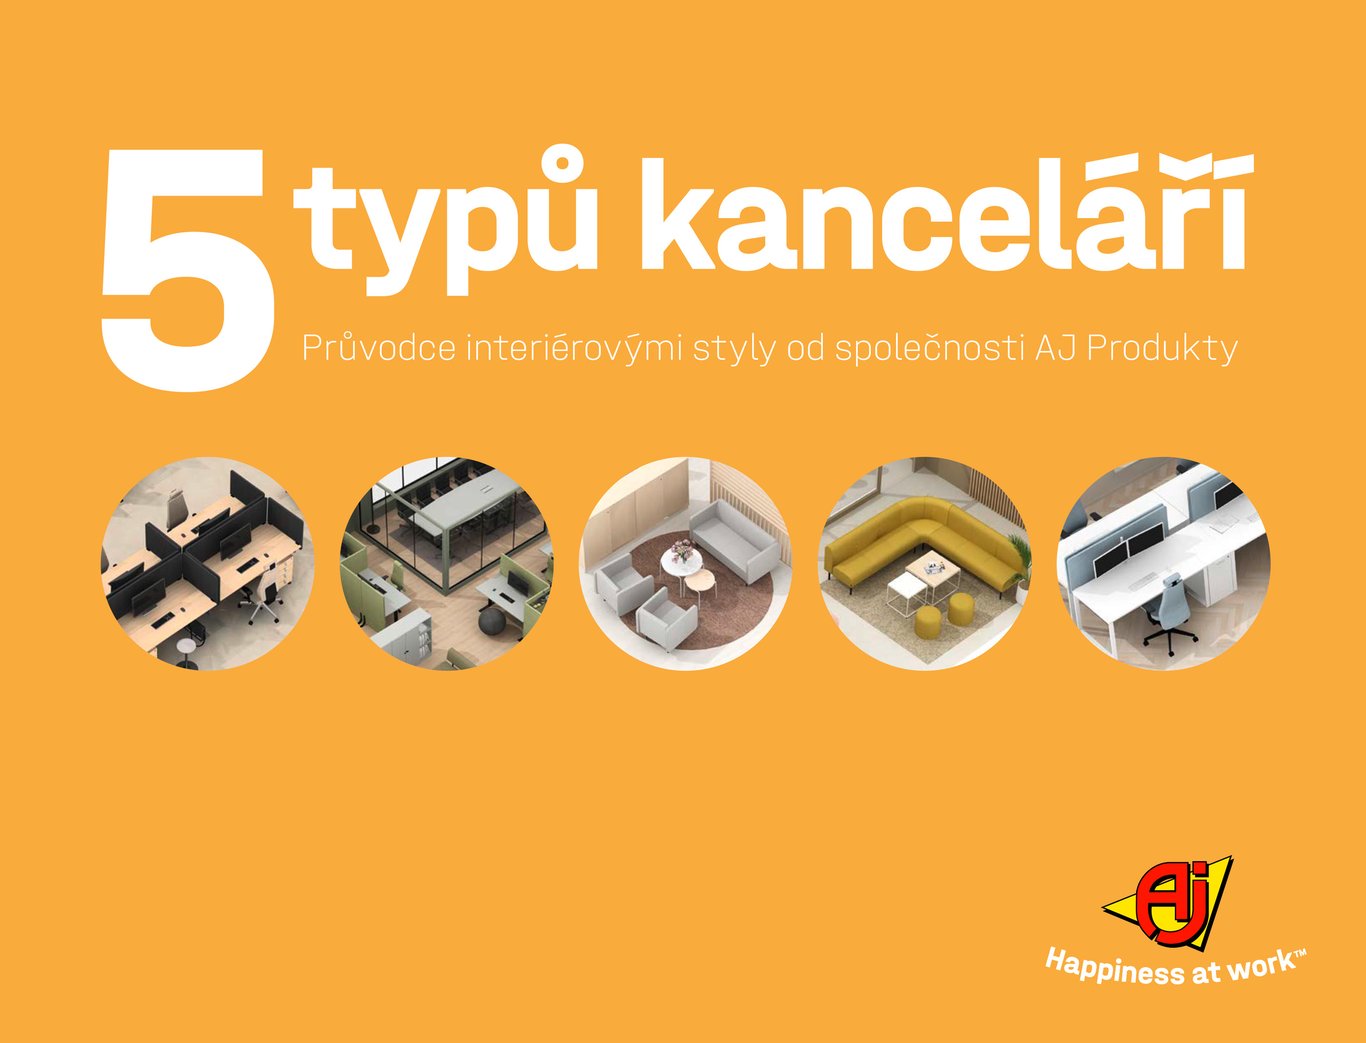 Katalog AJ Produkty - 5 typů kanceláří